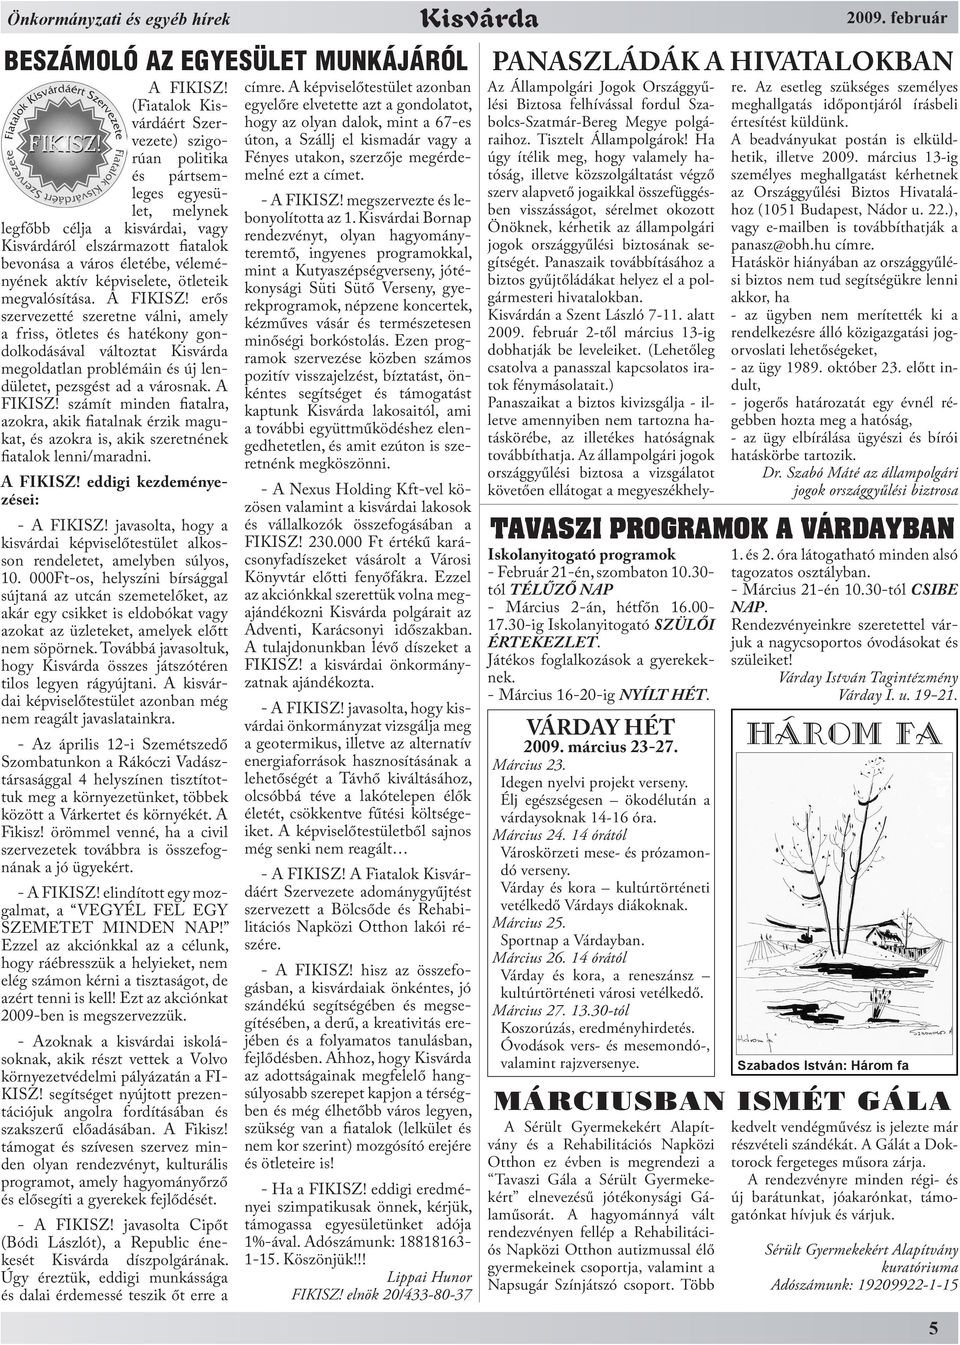 Kisvárda. A város polgárainak közéleti folyóirata VÁROSI ÜNNEPSÉG MÁRCIUS  15-ÉN - PDF Ingyenes letöltés